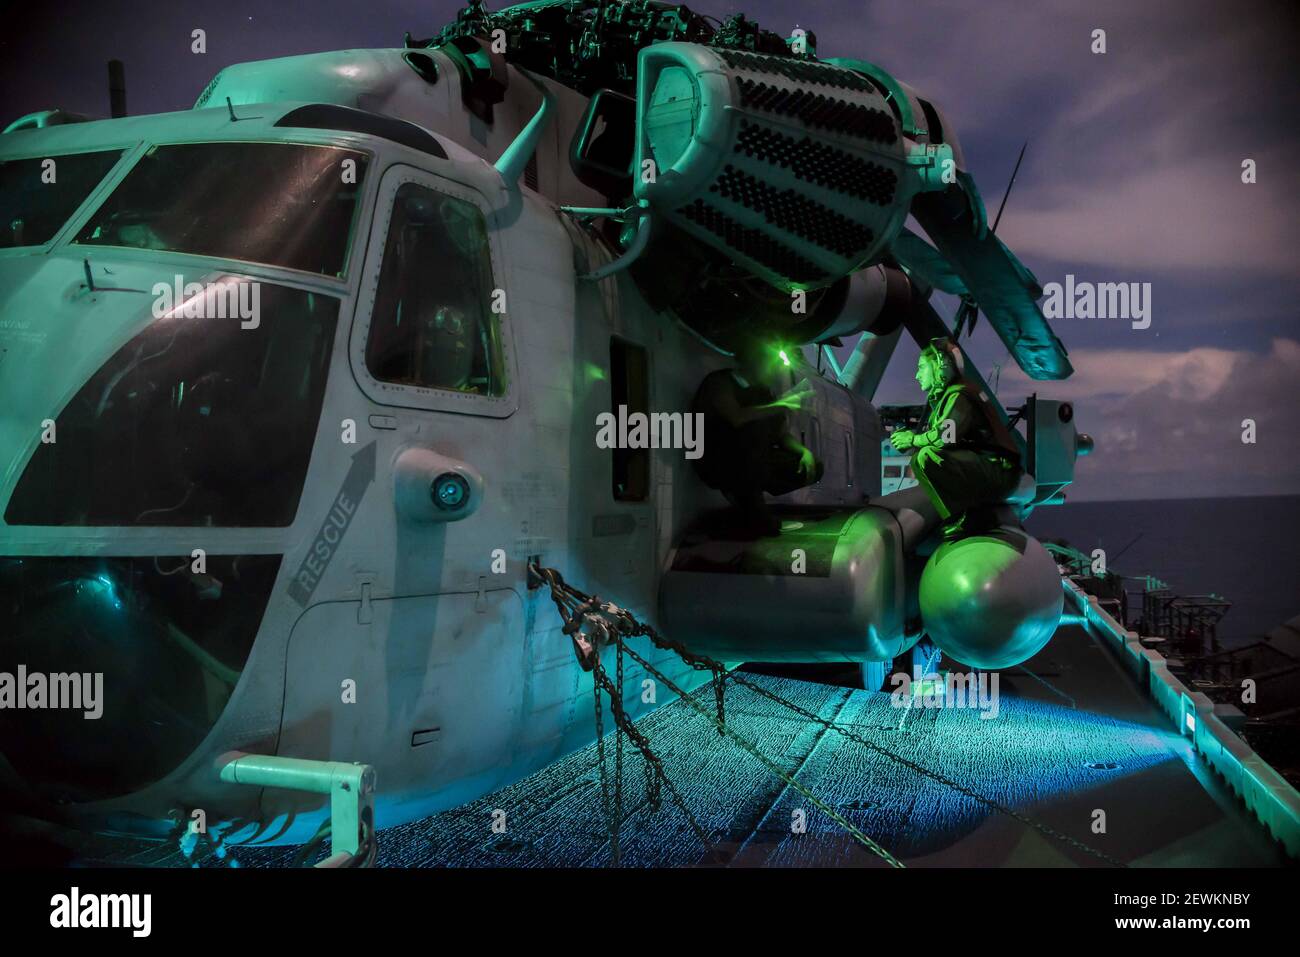 MARE DELLE FILIPPINE (settembre 20, 2016) Marines conduce la manutenzione su un SH-53E Super Stallion sul ponte di volo della nave d'assalto anfibia USS Bonhomme Richard (LHD 6). Bonhomme Richard, ammiraglia del gruppo Bonhomme Richard Expeditionary Strike, opera nel Mare delle Filippine a sostegno della sicurezza e della stabilità nella regione Indo-Asia-Pacifico. (Foto di Mass Communication Specialist 3° Classe William Sykes/U.S.A. Navy)160920-N-XK809-025 Nota bene: Le tariffe addebitate dall'agenzia sono solo per i servizi dell'agenzia e non trasmettono, né intendono, all'utente alcuna proprietà di Copyri Foto Stock